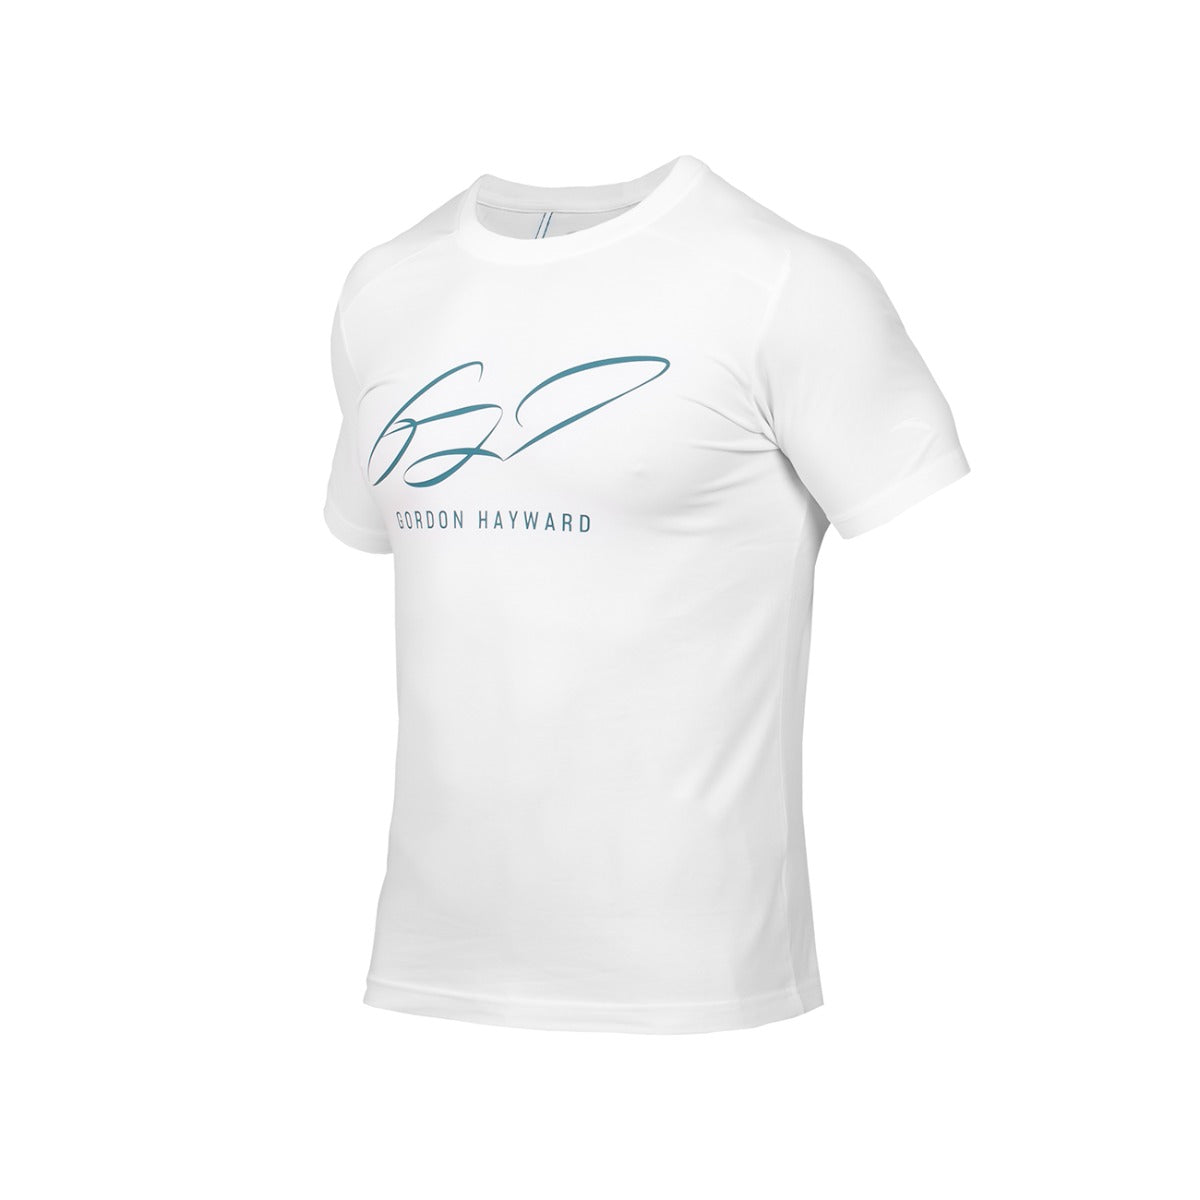 Anta SS TEE Basketball T-Shirt For Men, White